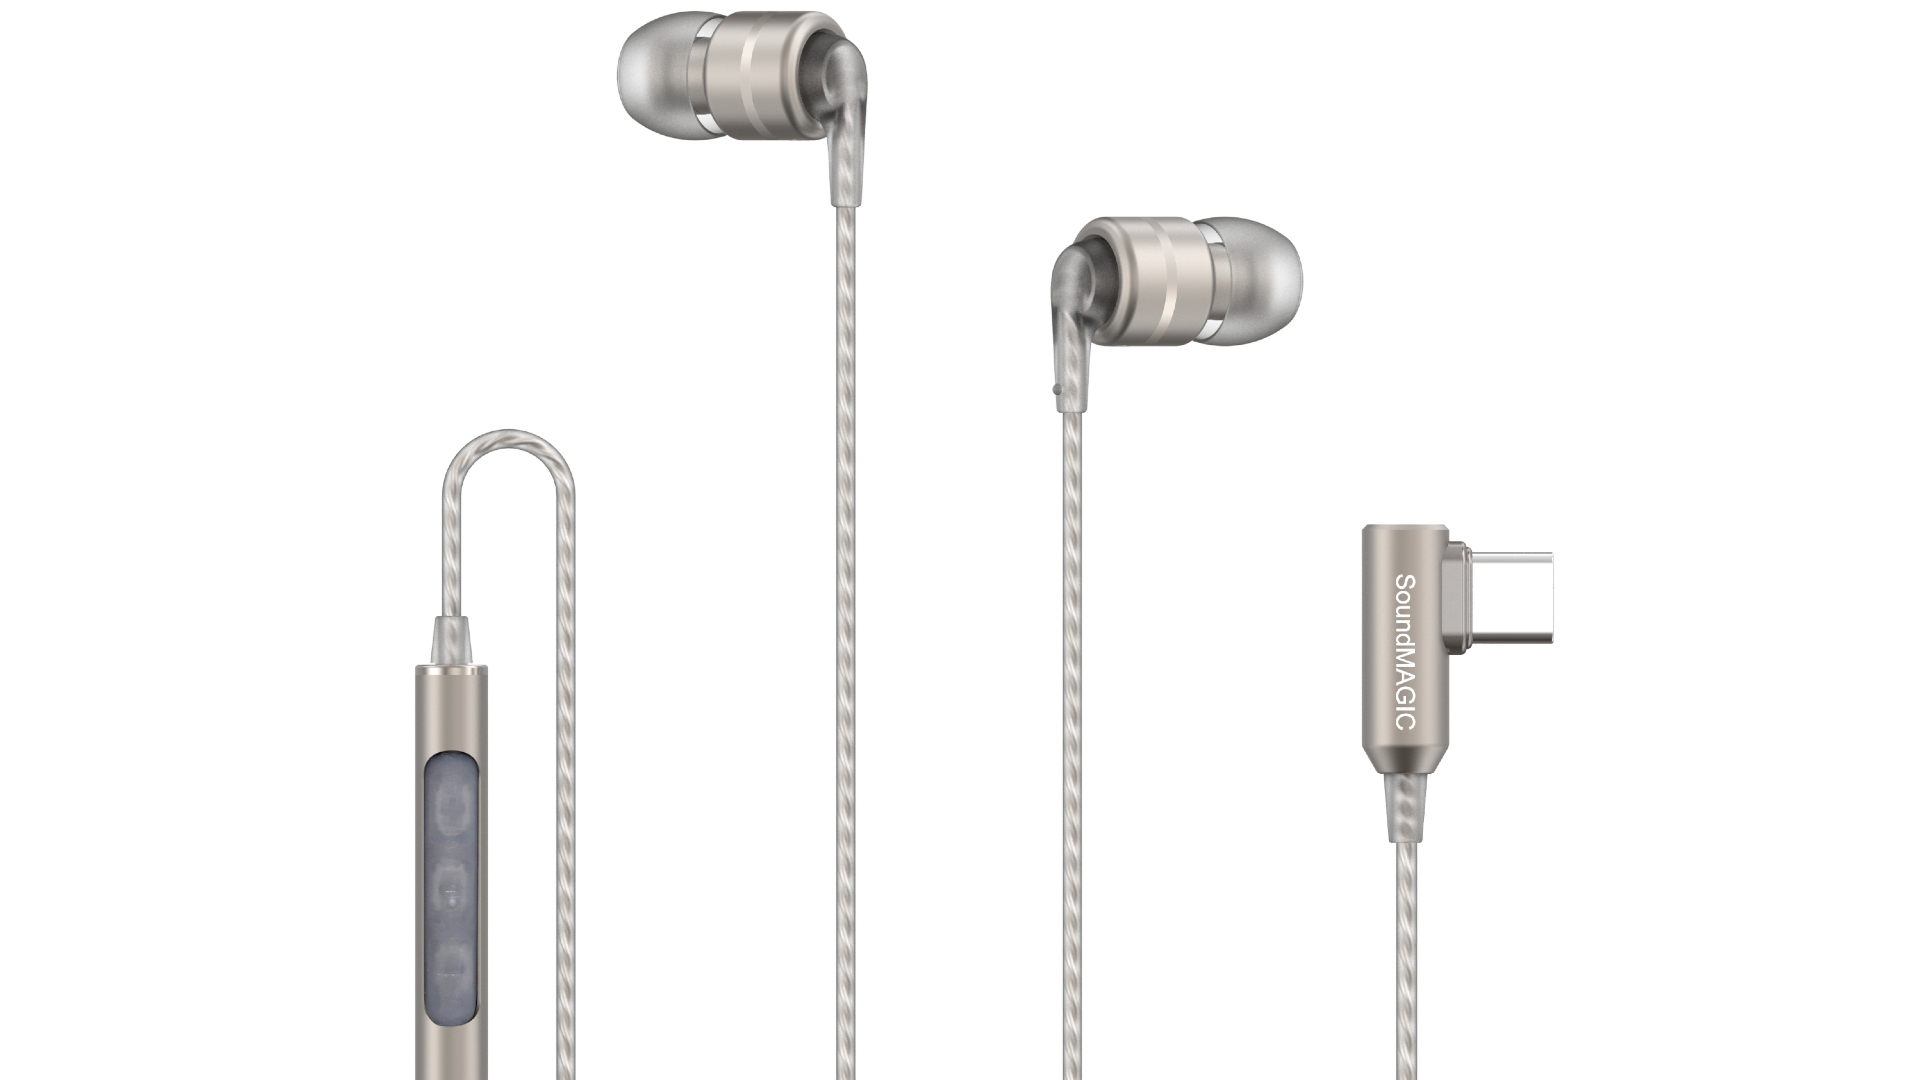 Новые дешевые наушники USB-C от SoundMagic оснащены встроенным ЦАП для передачи звука высокого разрешения с iPhone или Android.